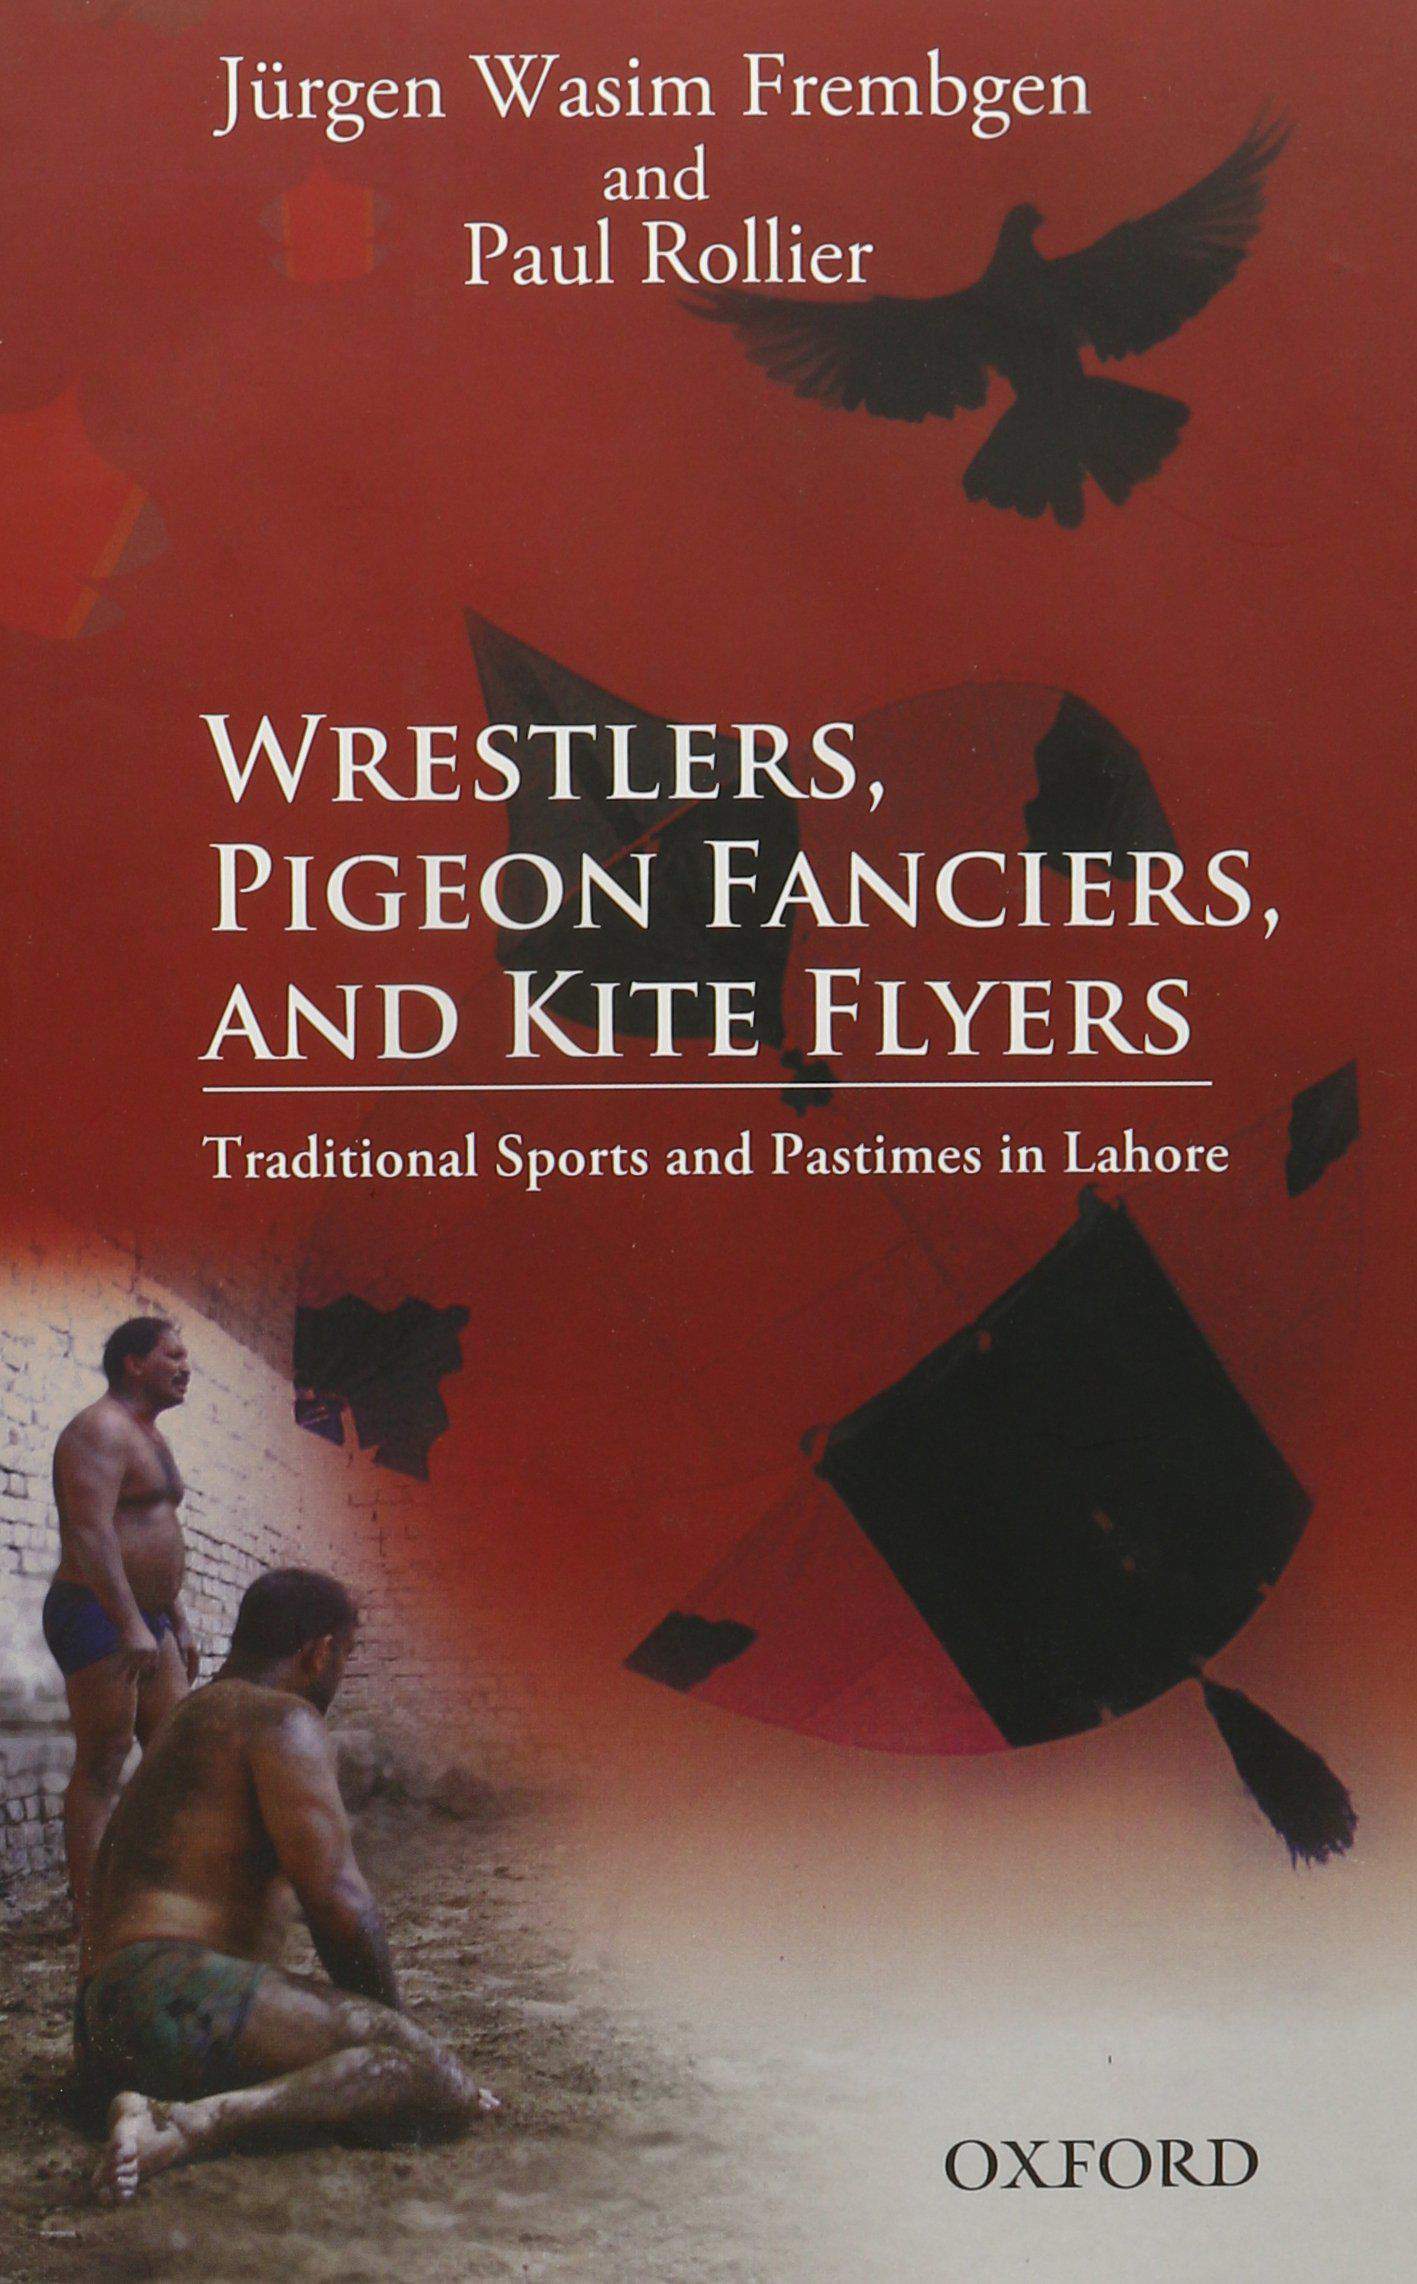 Jürgen Wasim Frembgen, Paul Rollier, Wrestlers, Pigeon Fanciers and Kite Flyers